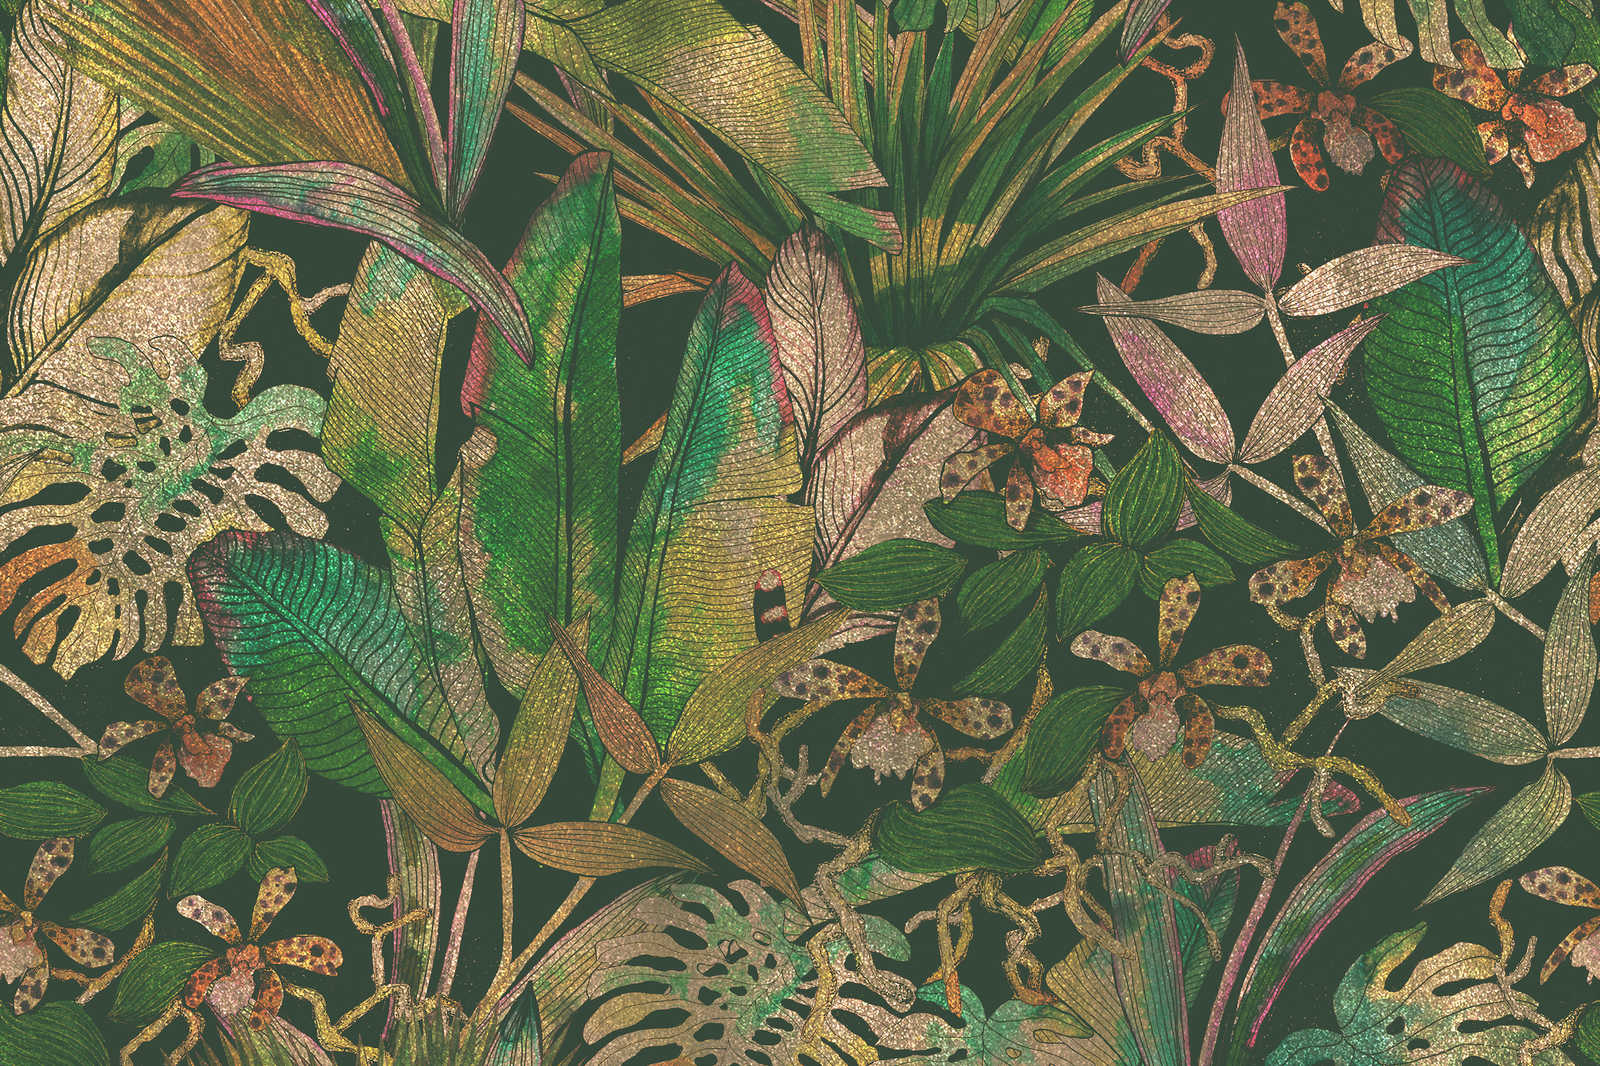             Leinwandbild Dschungelmotiv mit Blättern & Blumen – 0,90 m x 0,60 m
        